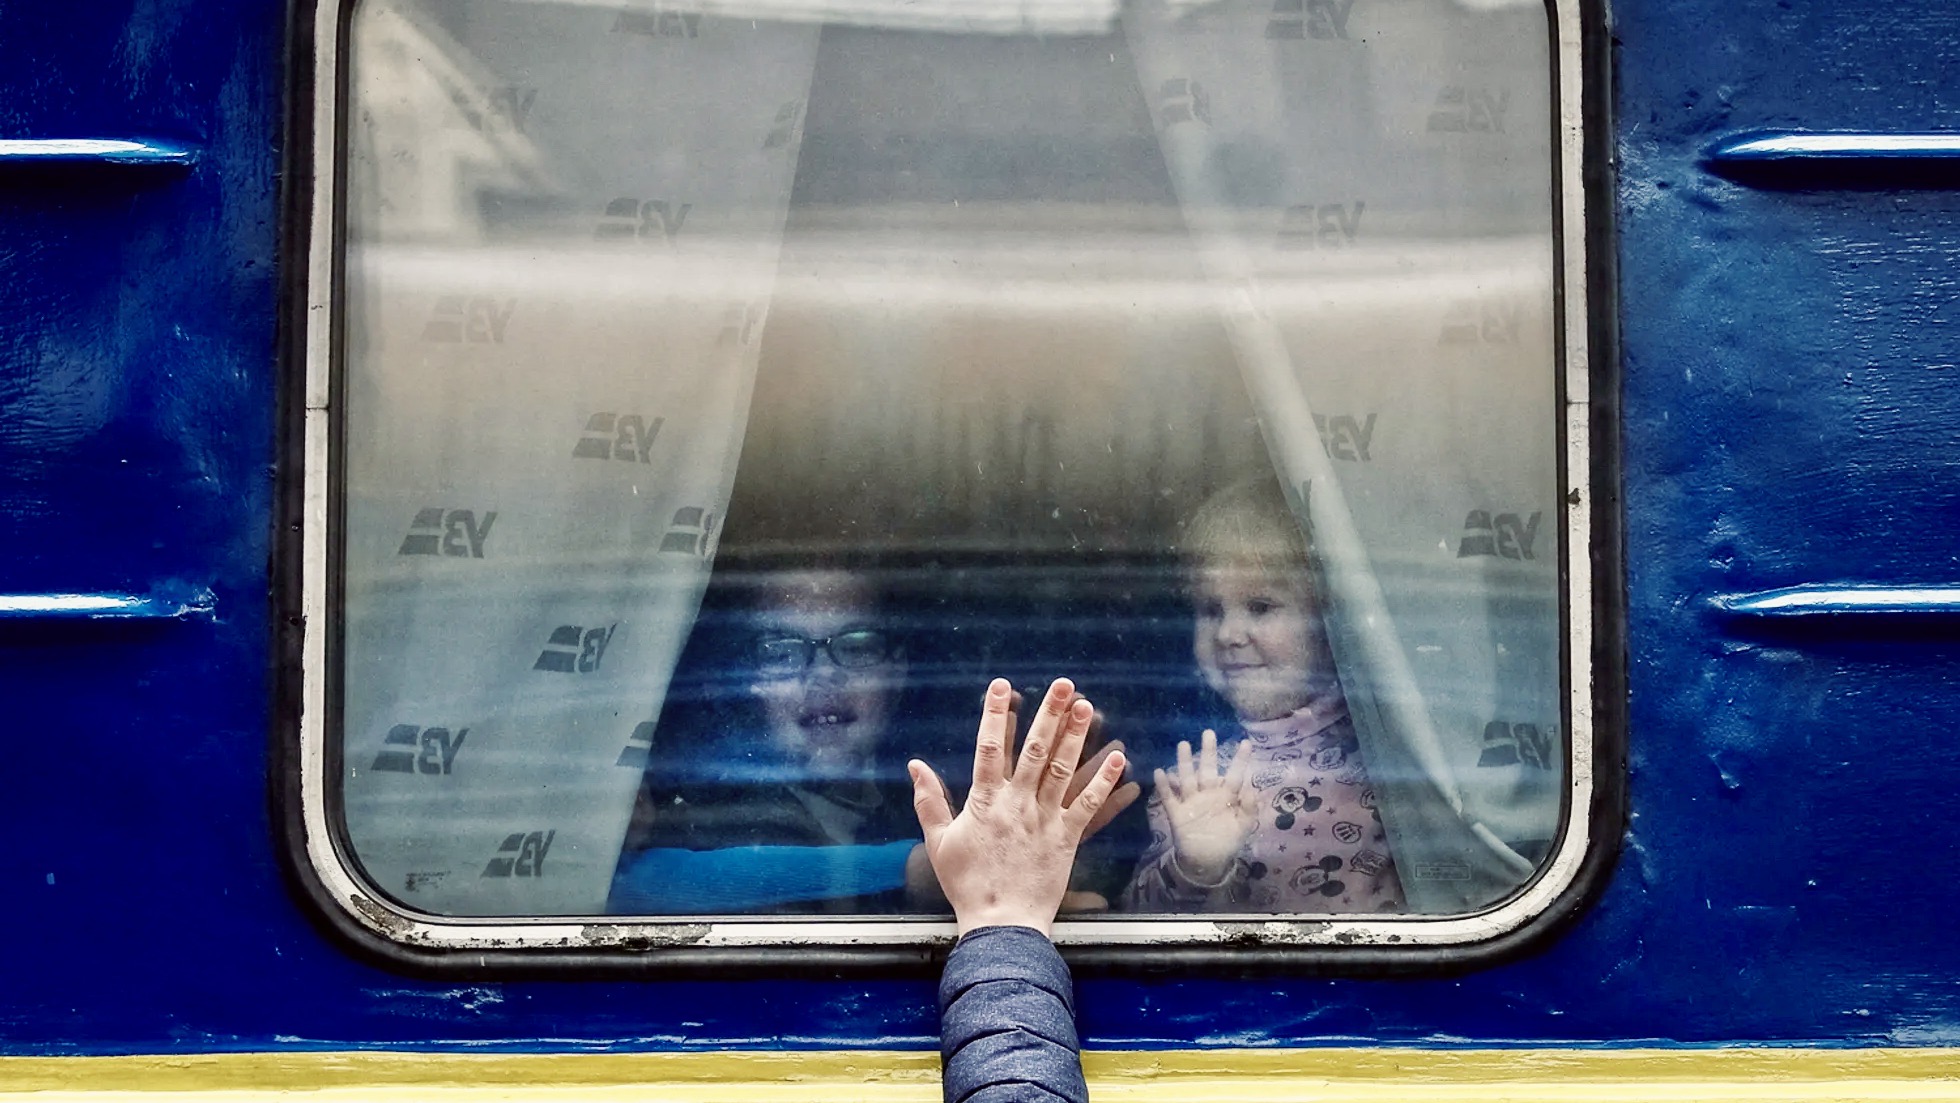 Φωτογραφία | Τα τελευταία “αντίο” των Ουκρανών στις οικογένειές τους – Αναζητώντας άσυλο μακριά από τη βαρβαρότητα του πόλεμου